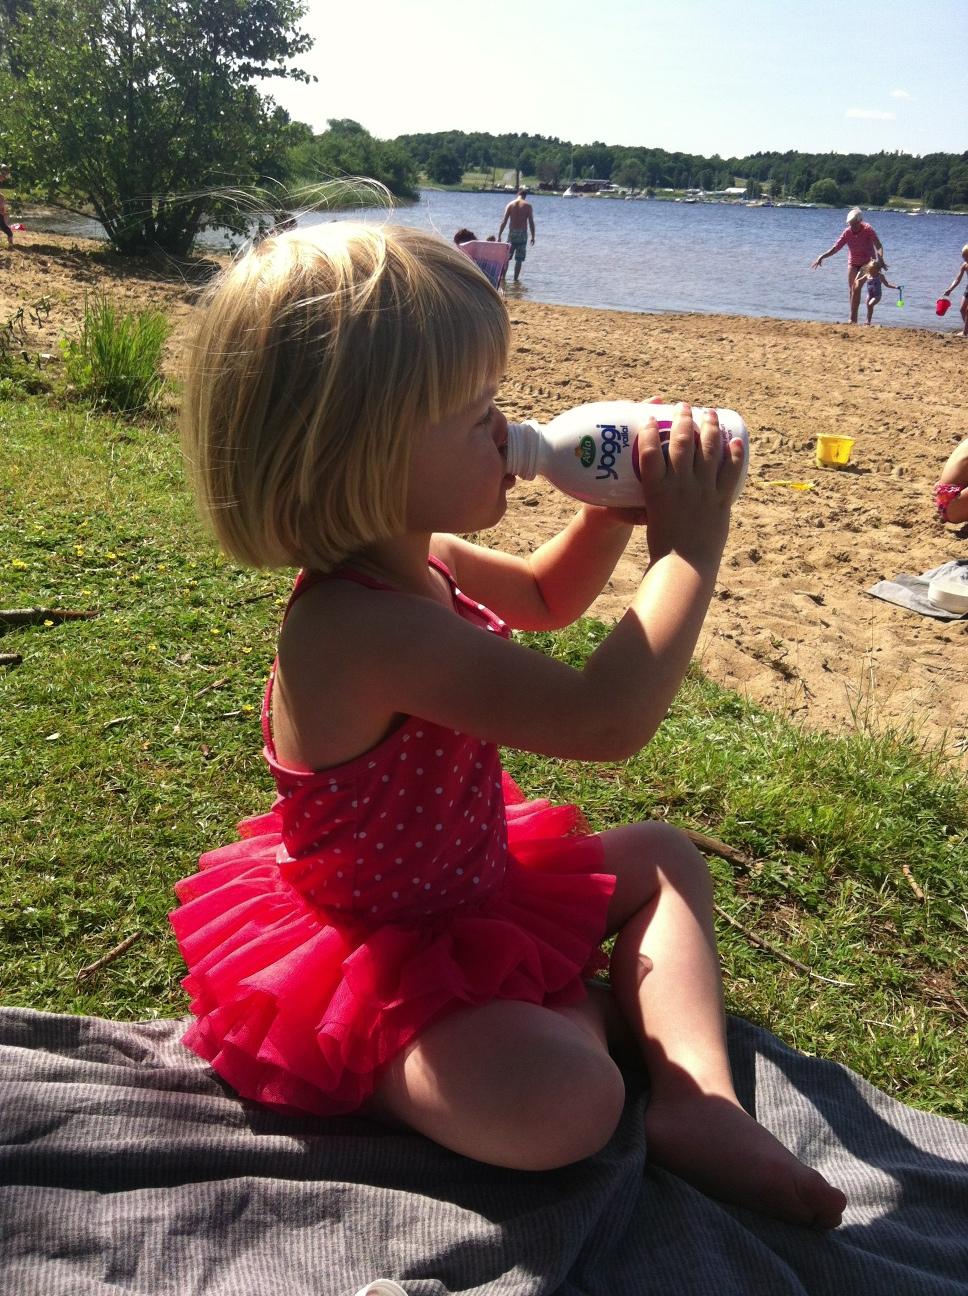 Härligt med sommar! Min dotter börjar strandhänget med en yoghurt.